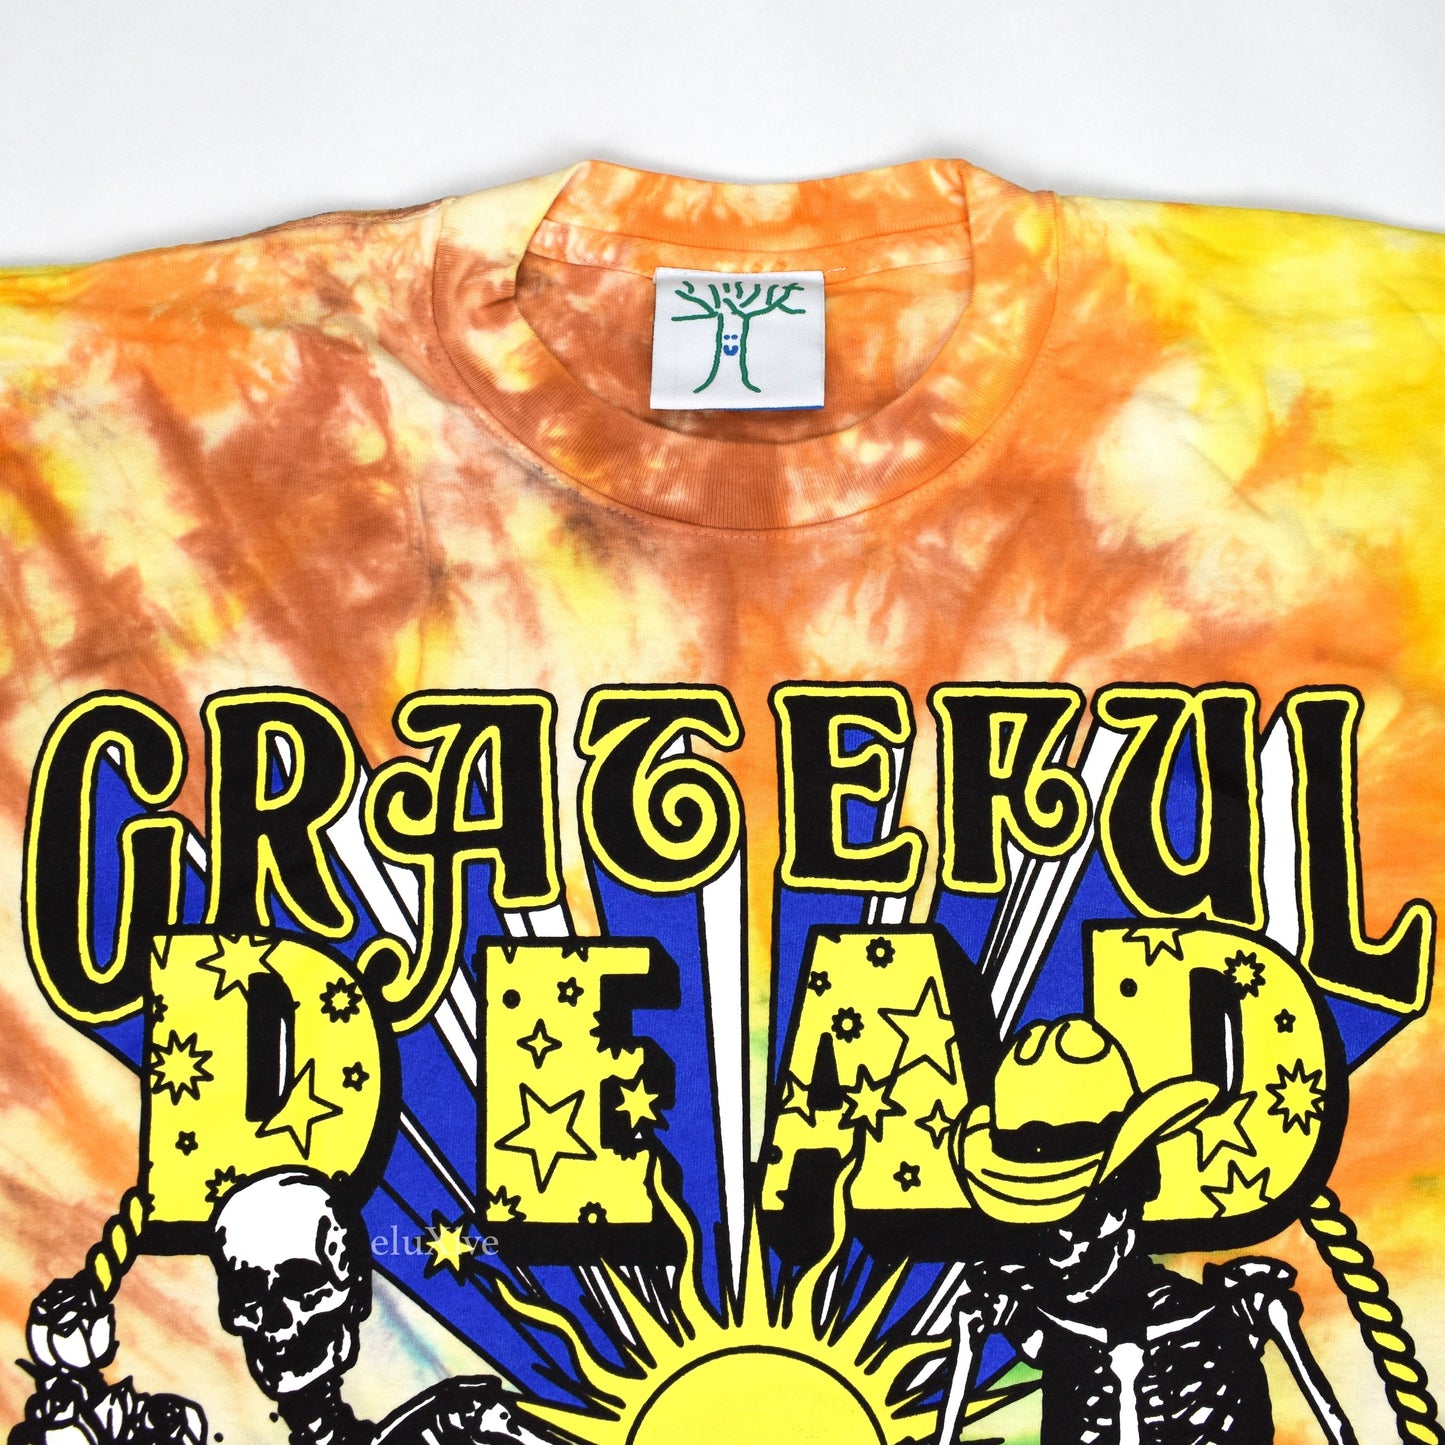 Online Ceramics - Grateful Dead Turtle River Tie-Dye T-Shirt